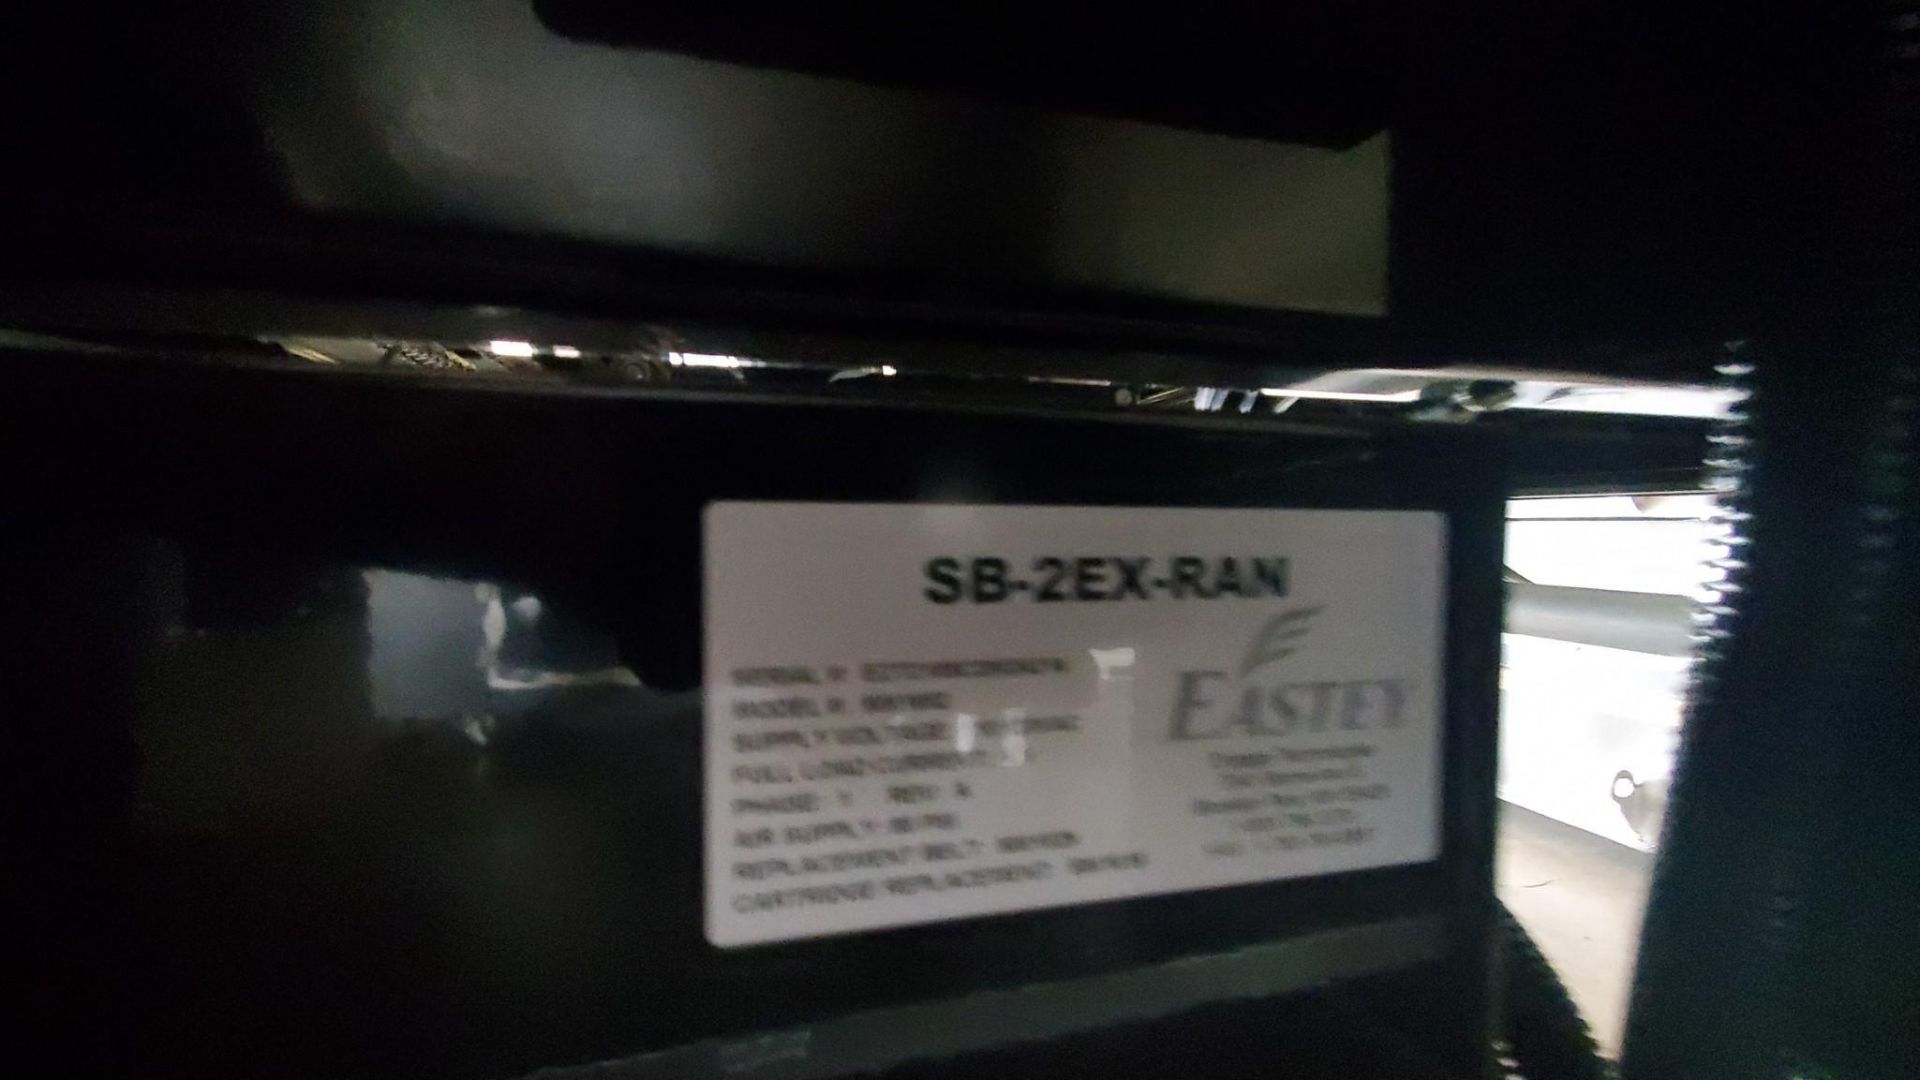 EASTEY SB-2EX-RANDOM SIDE BELT CASE TAPER, 2021 - Image 5 of 7